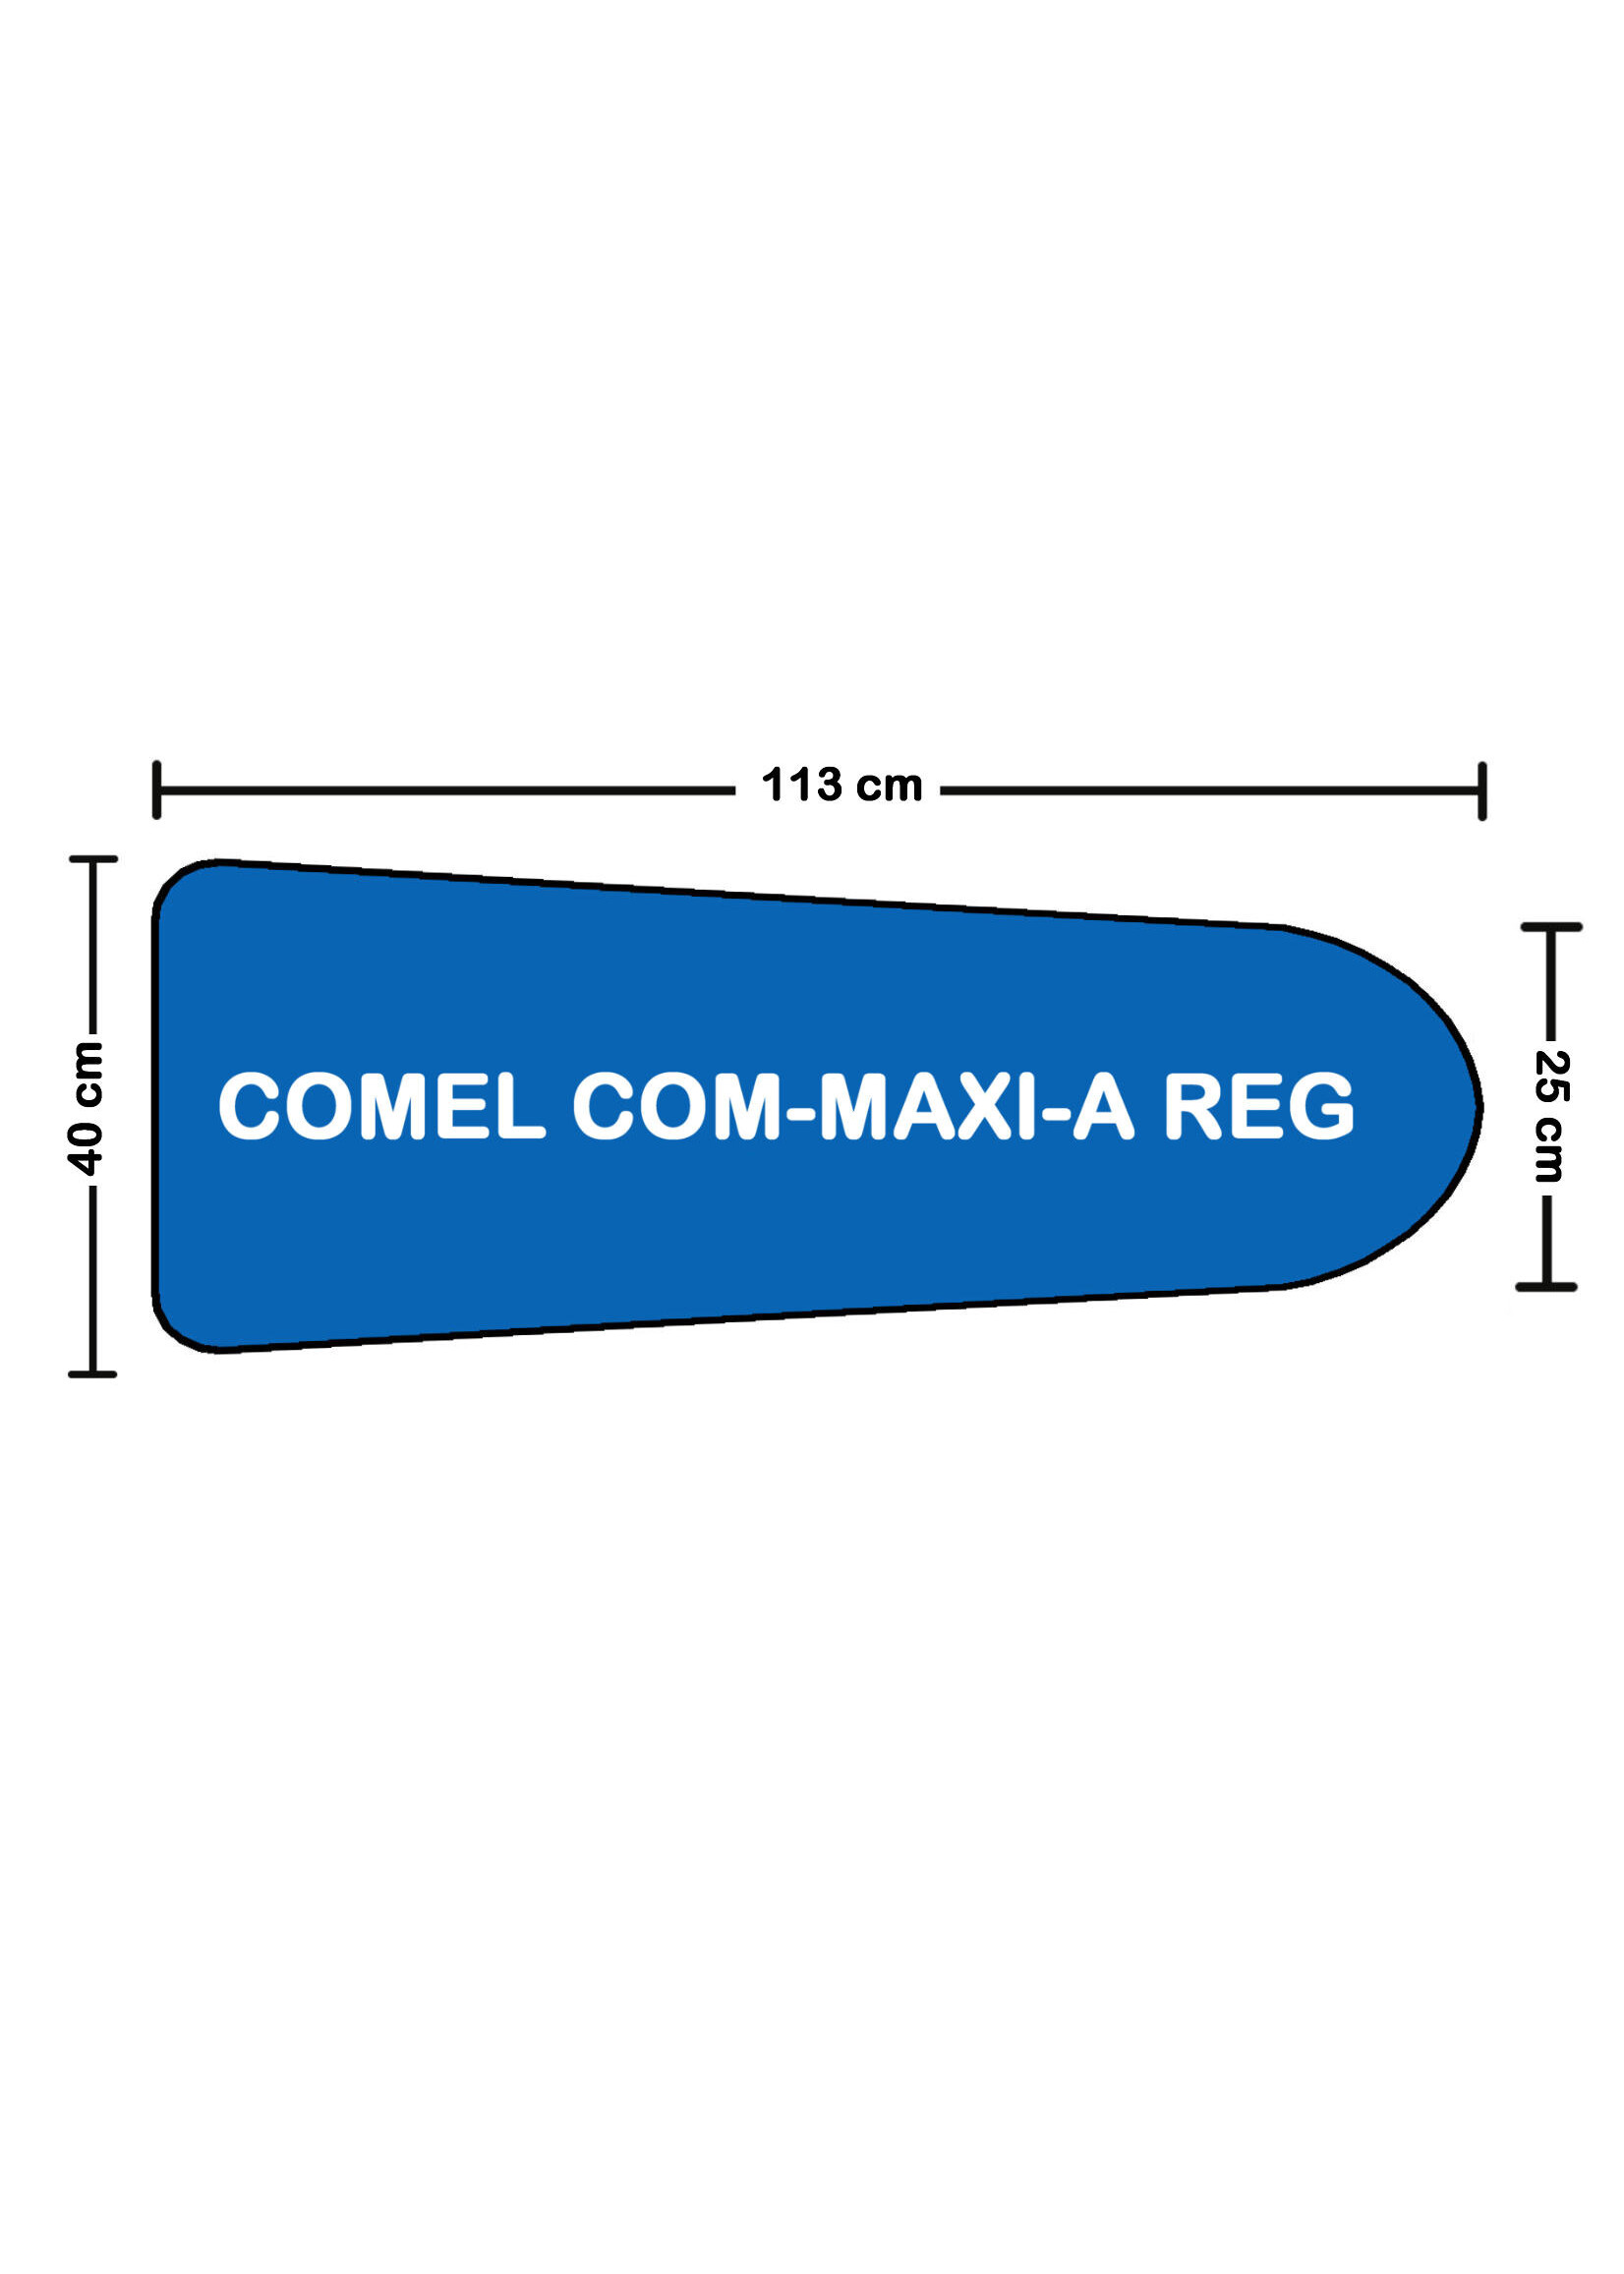 Solana COMEL COM-MAXI-A REG cover